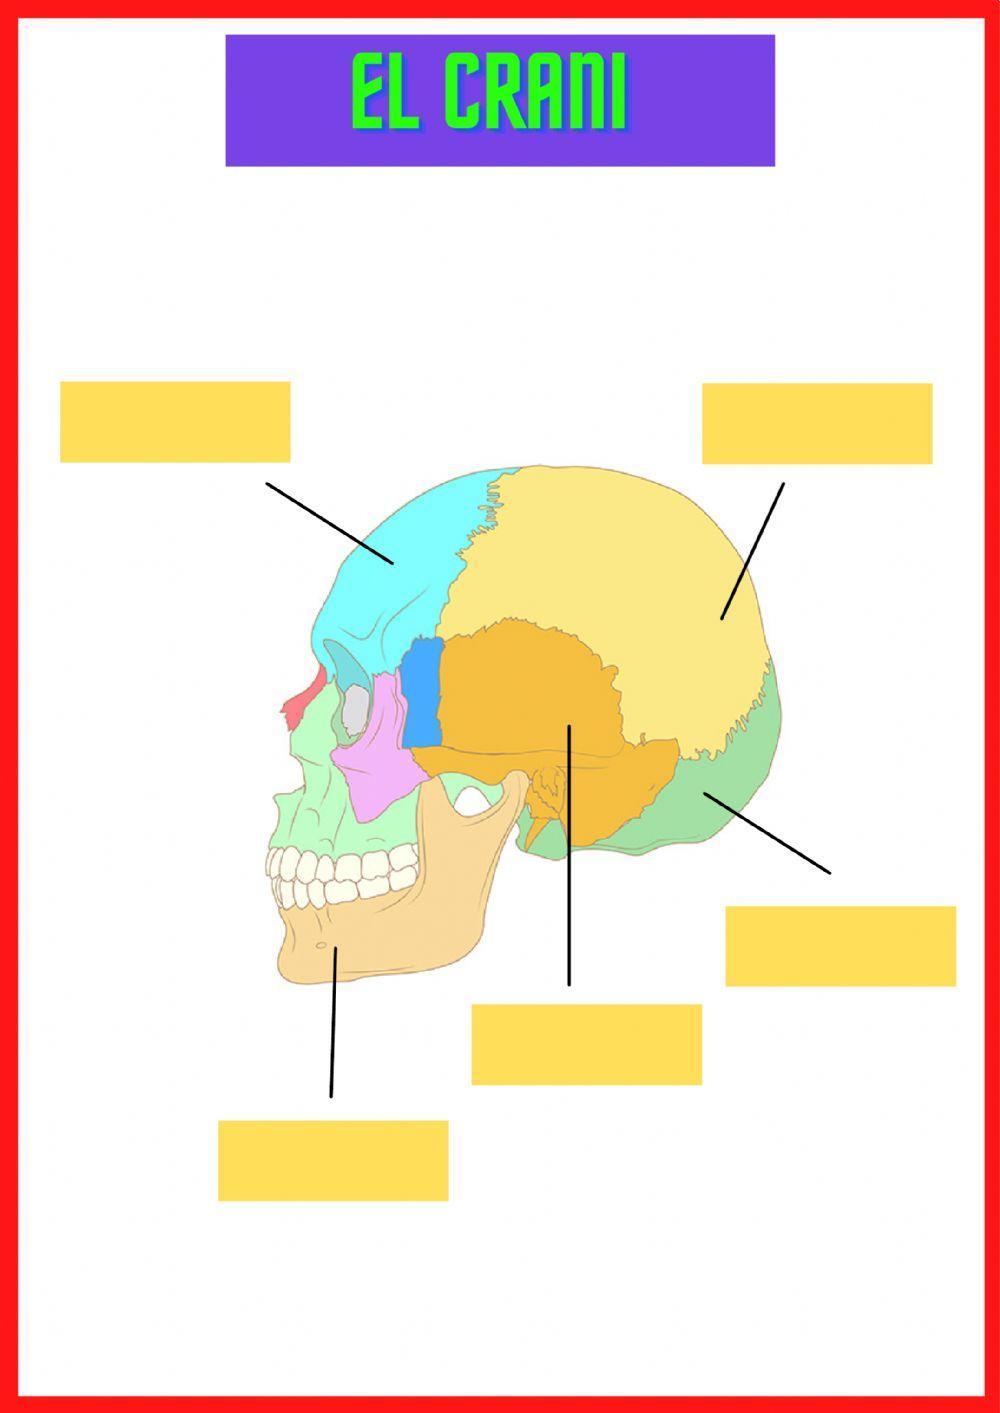 El crani